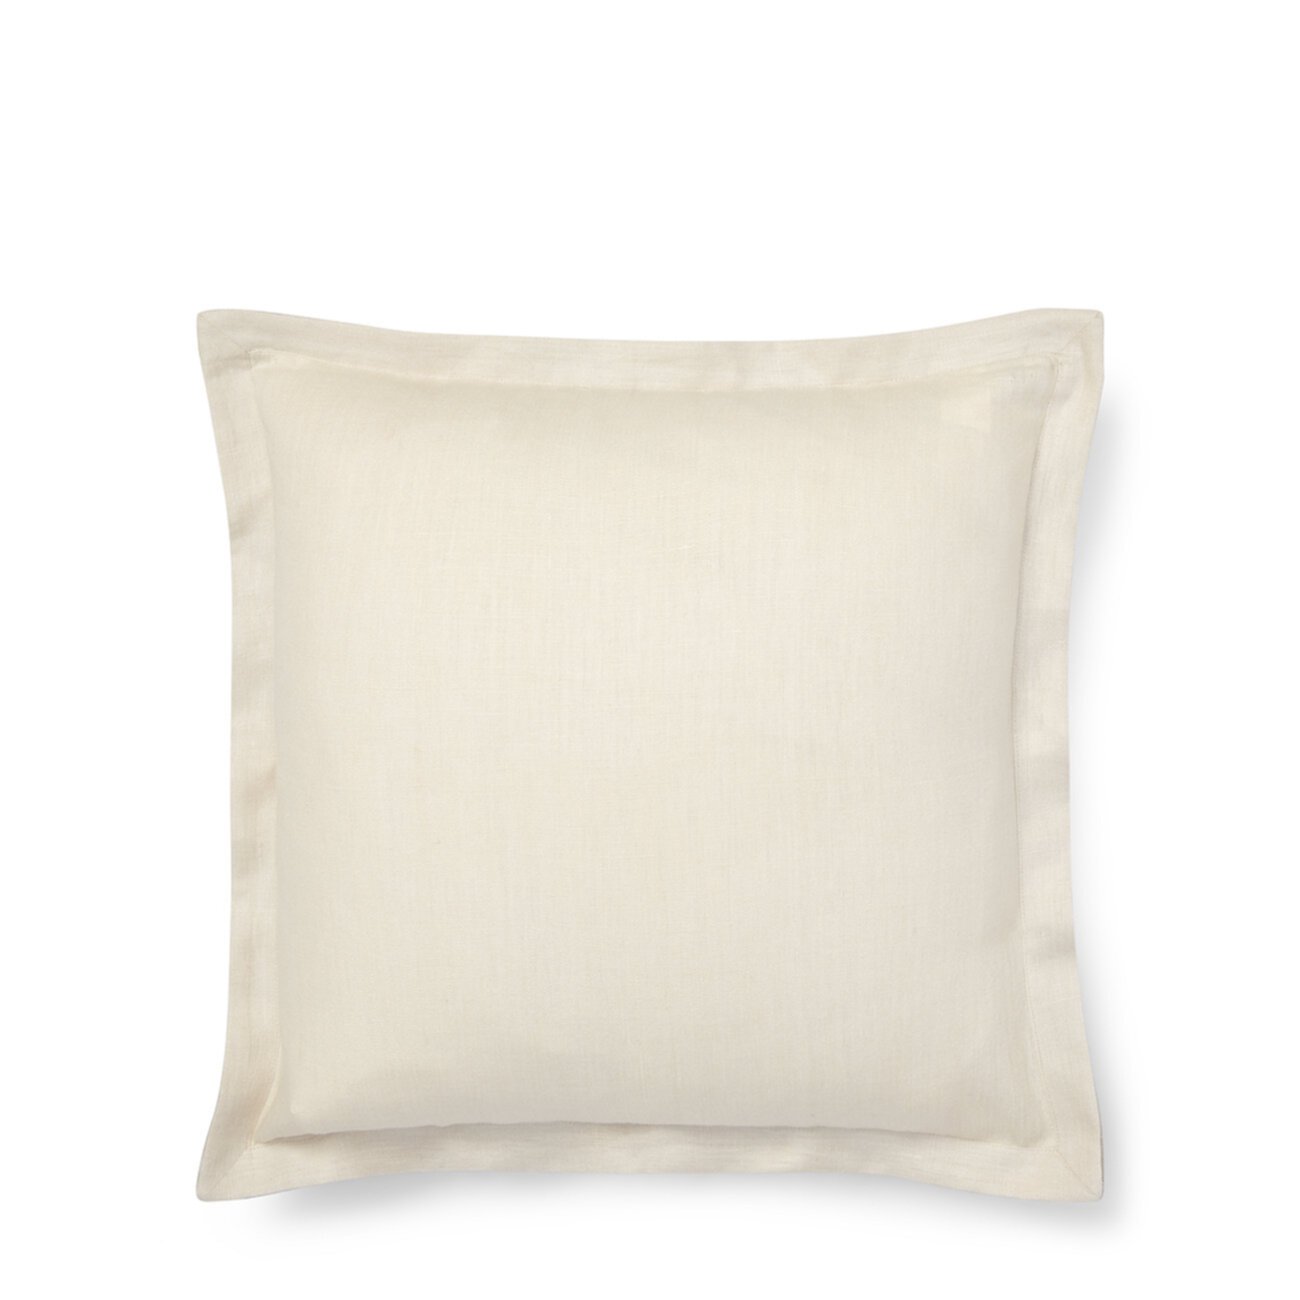 Квадратная декоративная подушка Allaire, 18 дюймов Ralph Lauren